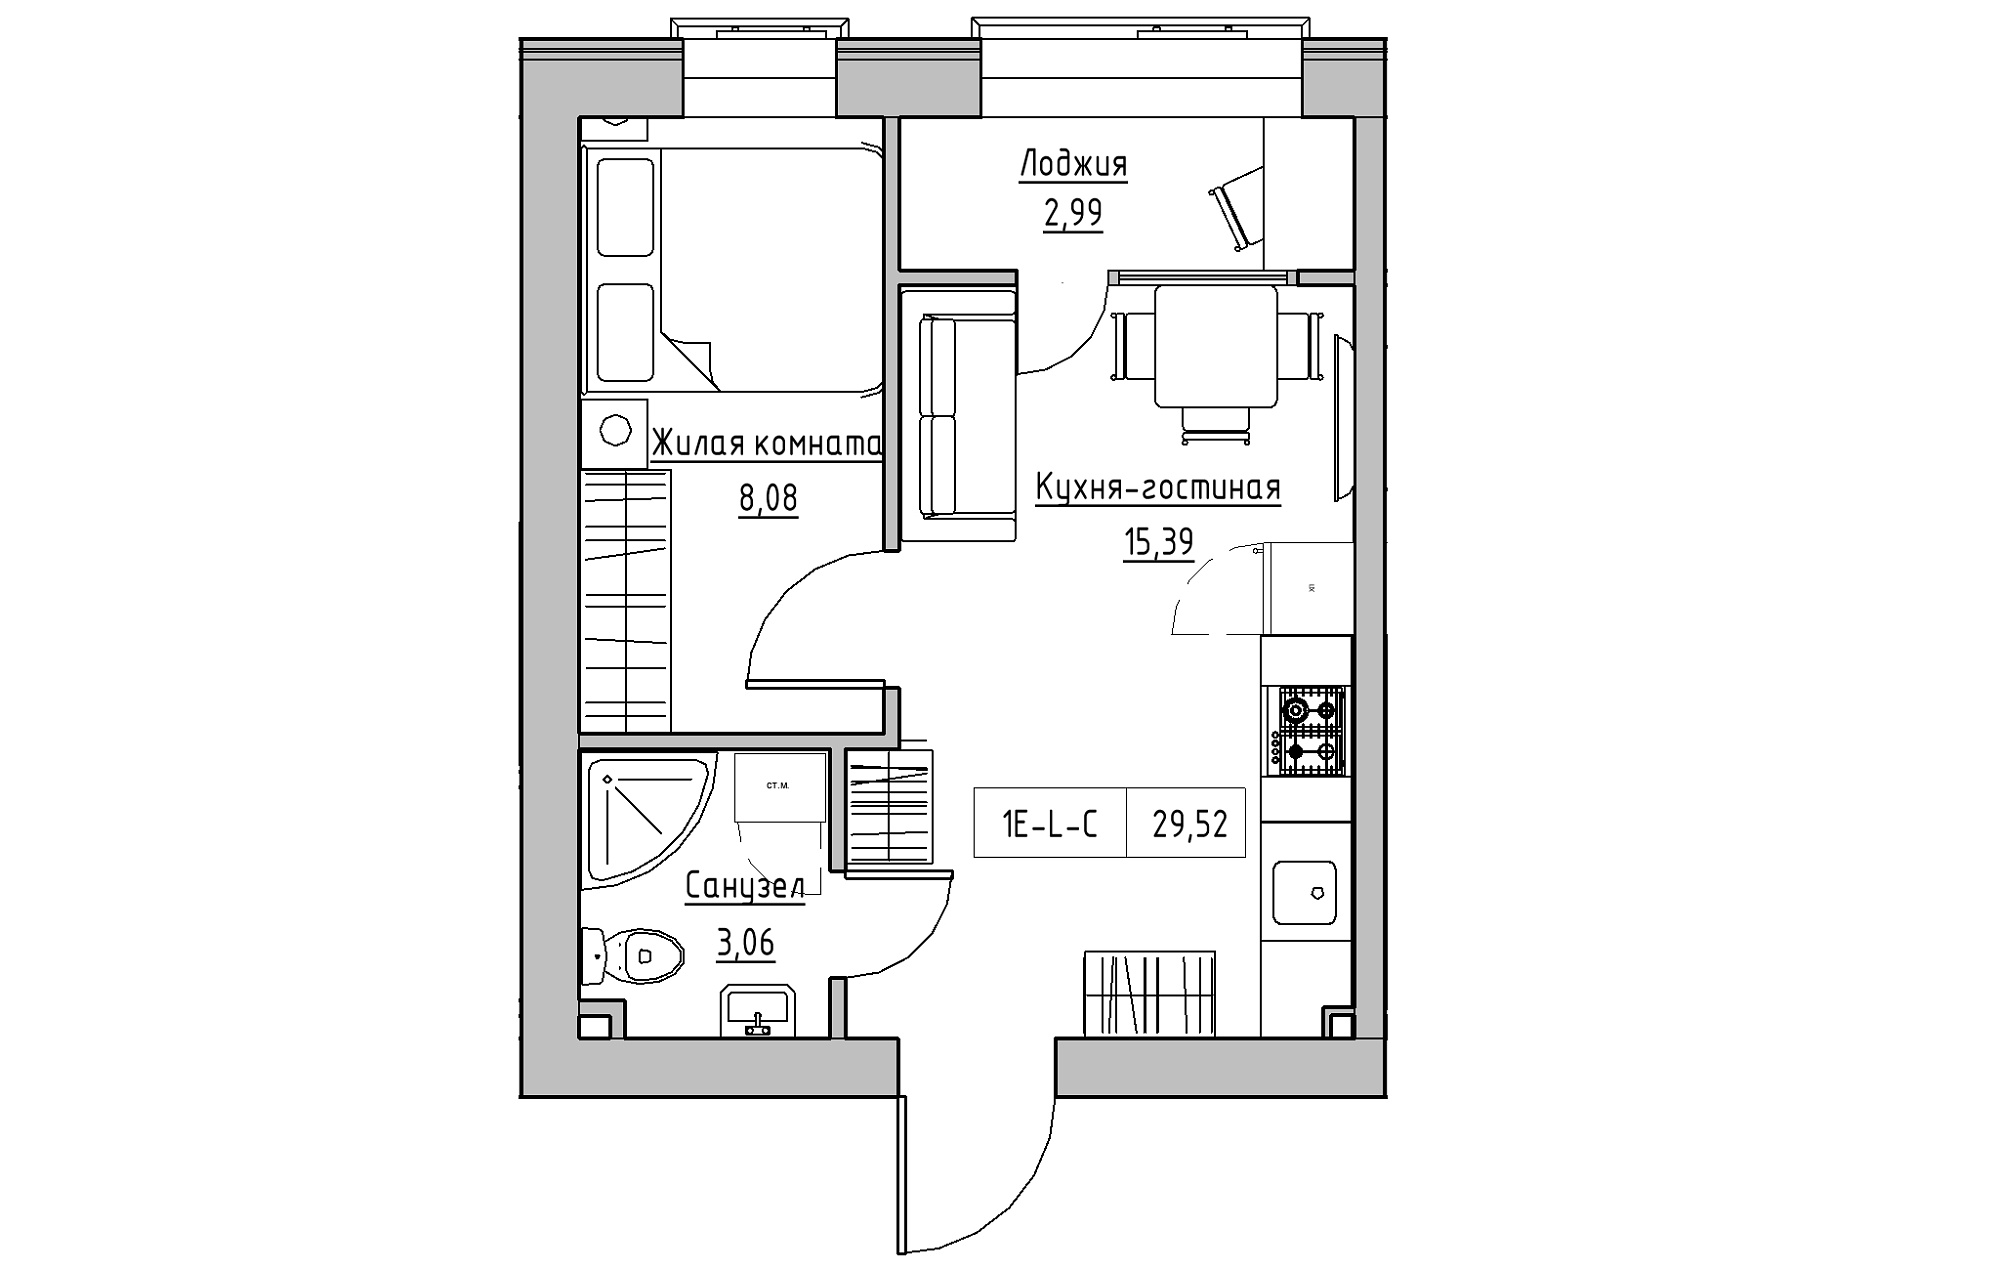 Планировка 1-к квартира площей 29.52м2, KS-018-01/0006.